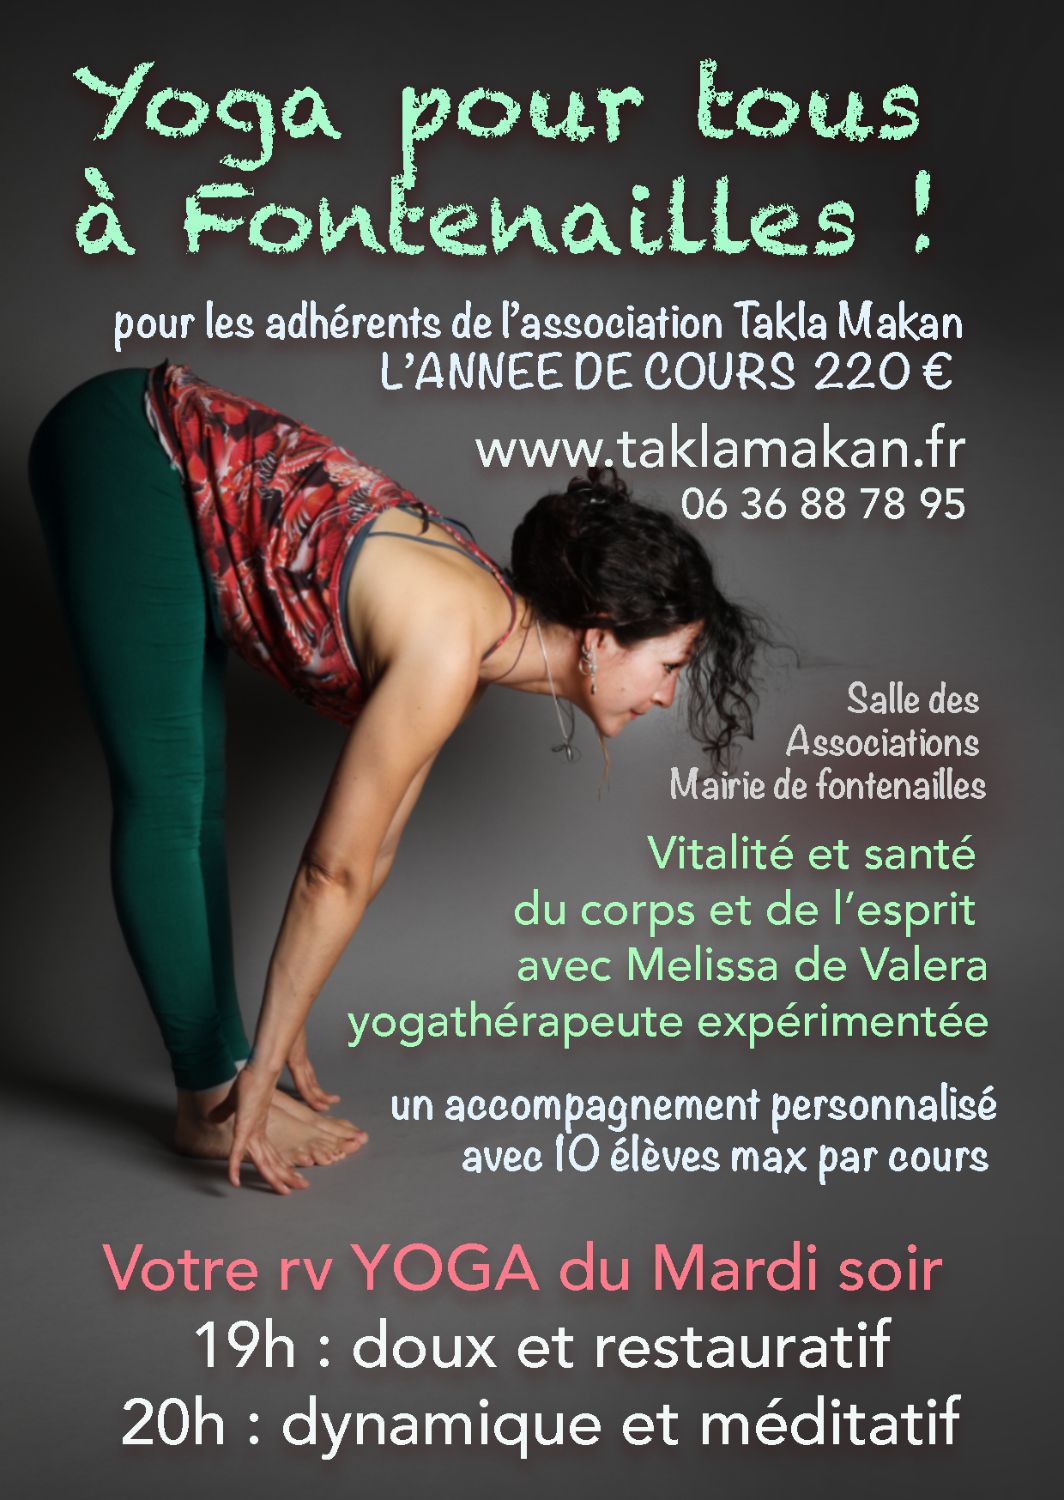 yoga pour tous Fontenailles asso Takla Makan